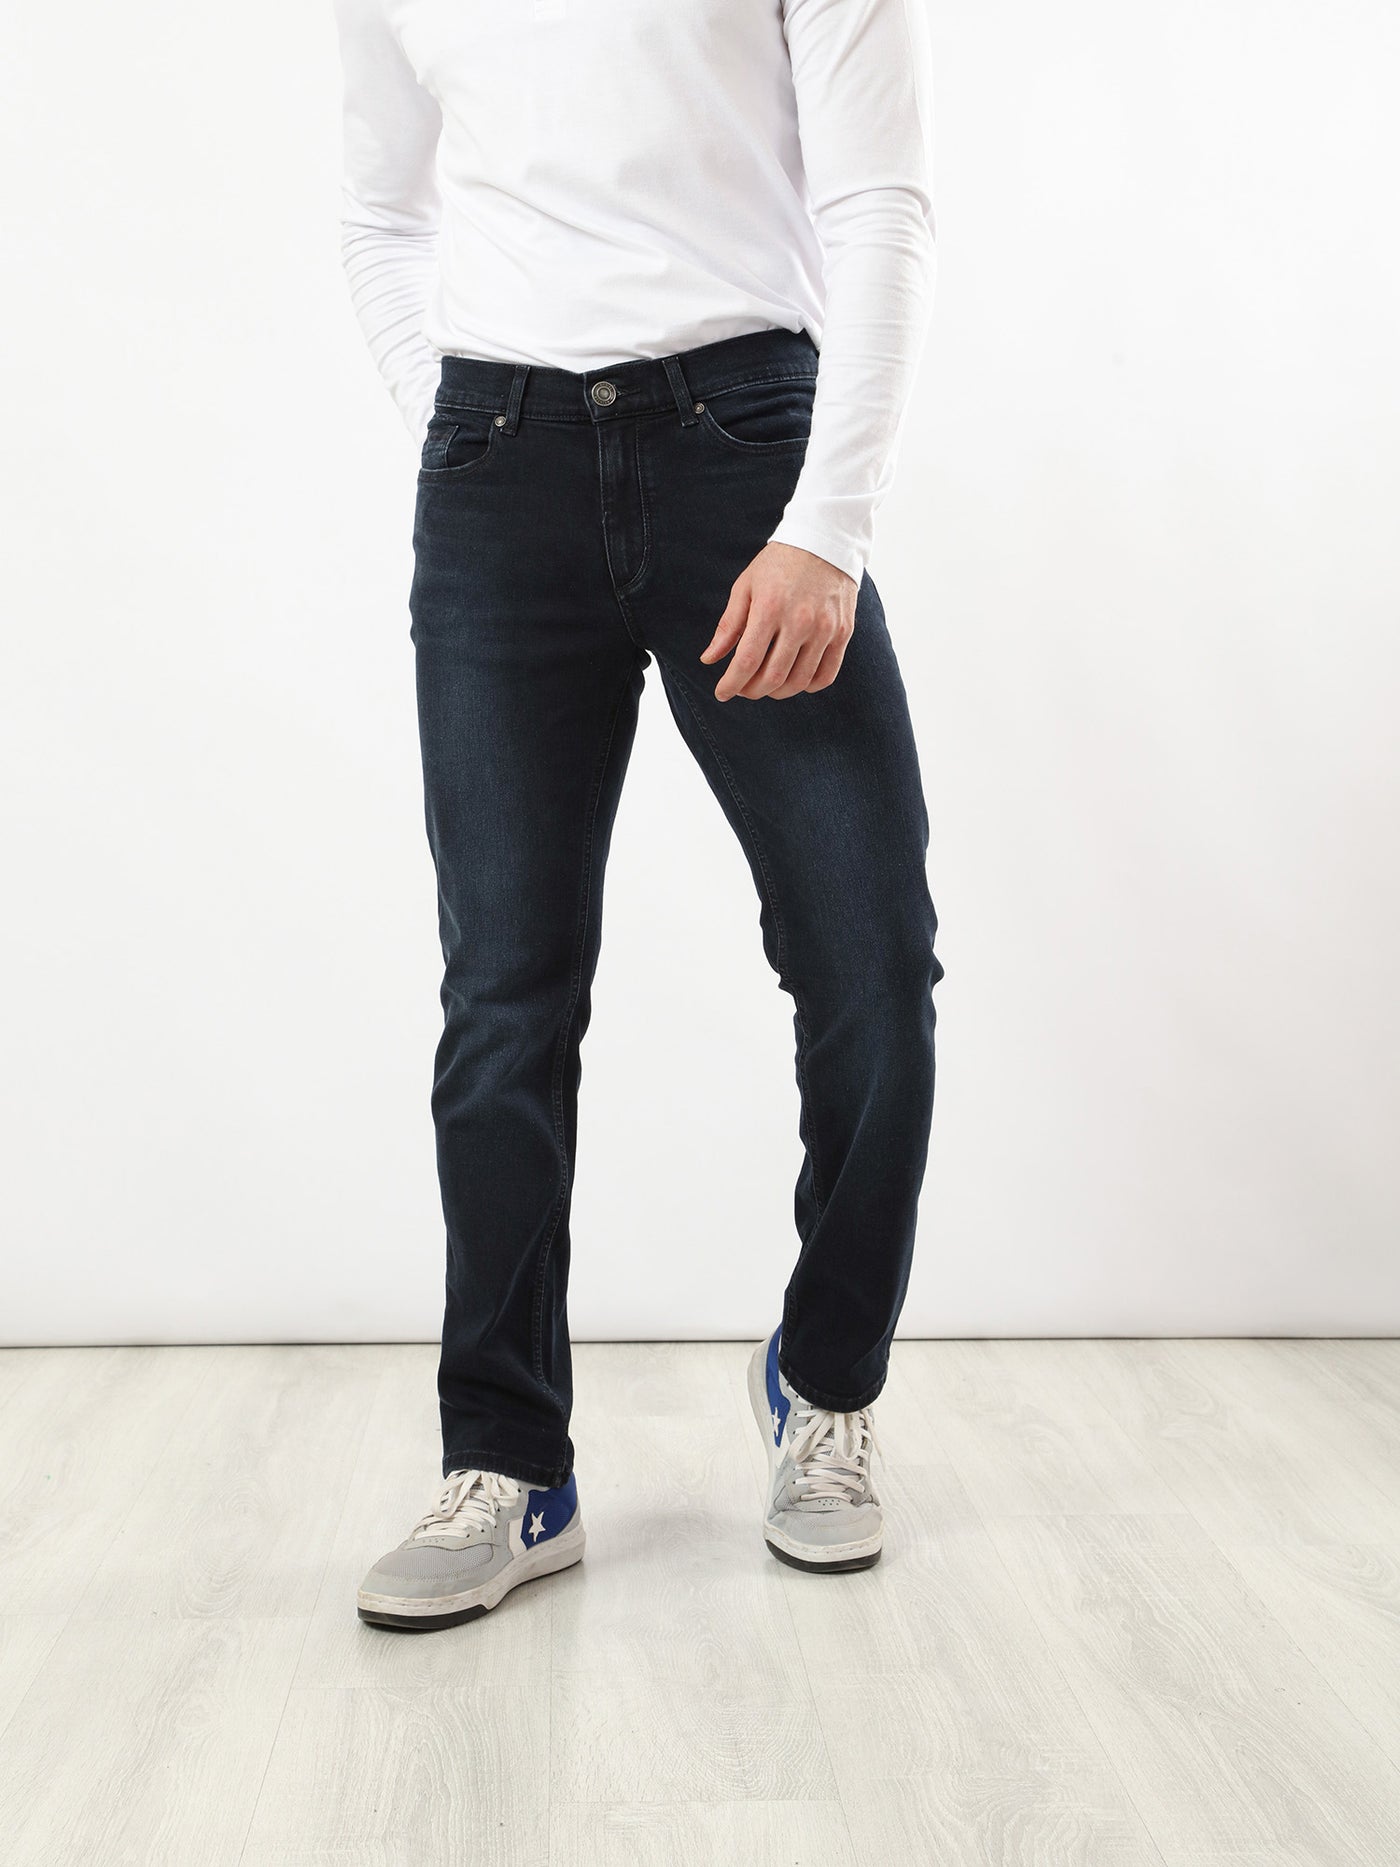 Jeans - Low Waist - Comfy Fit